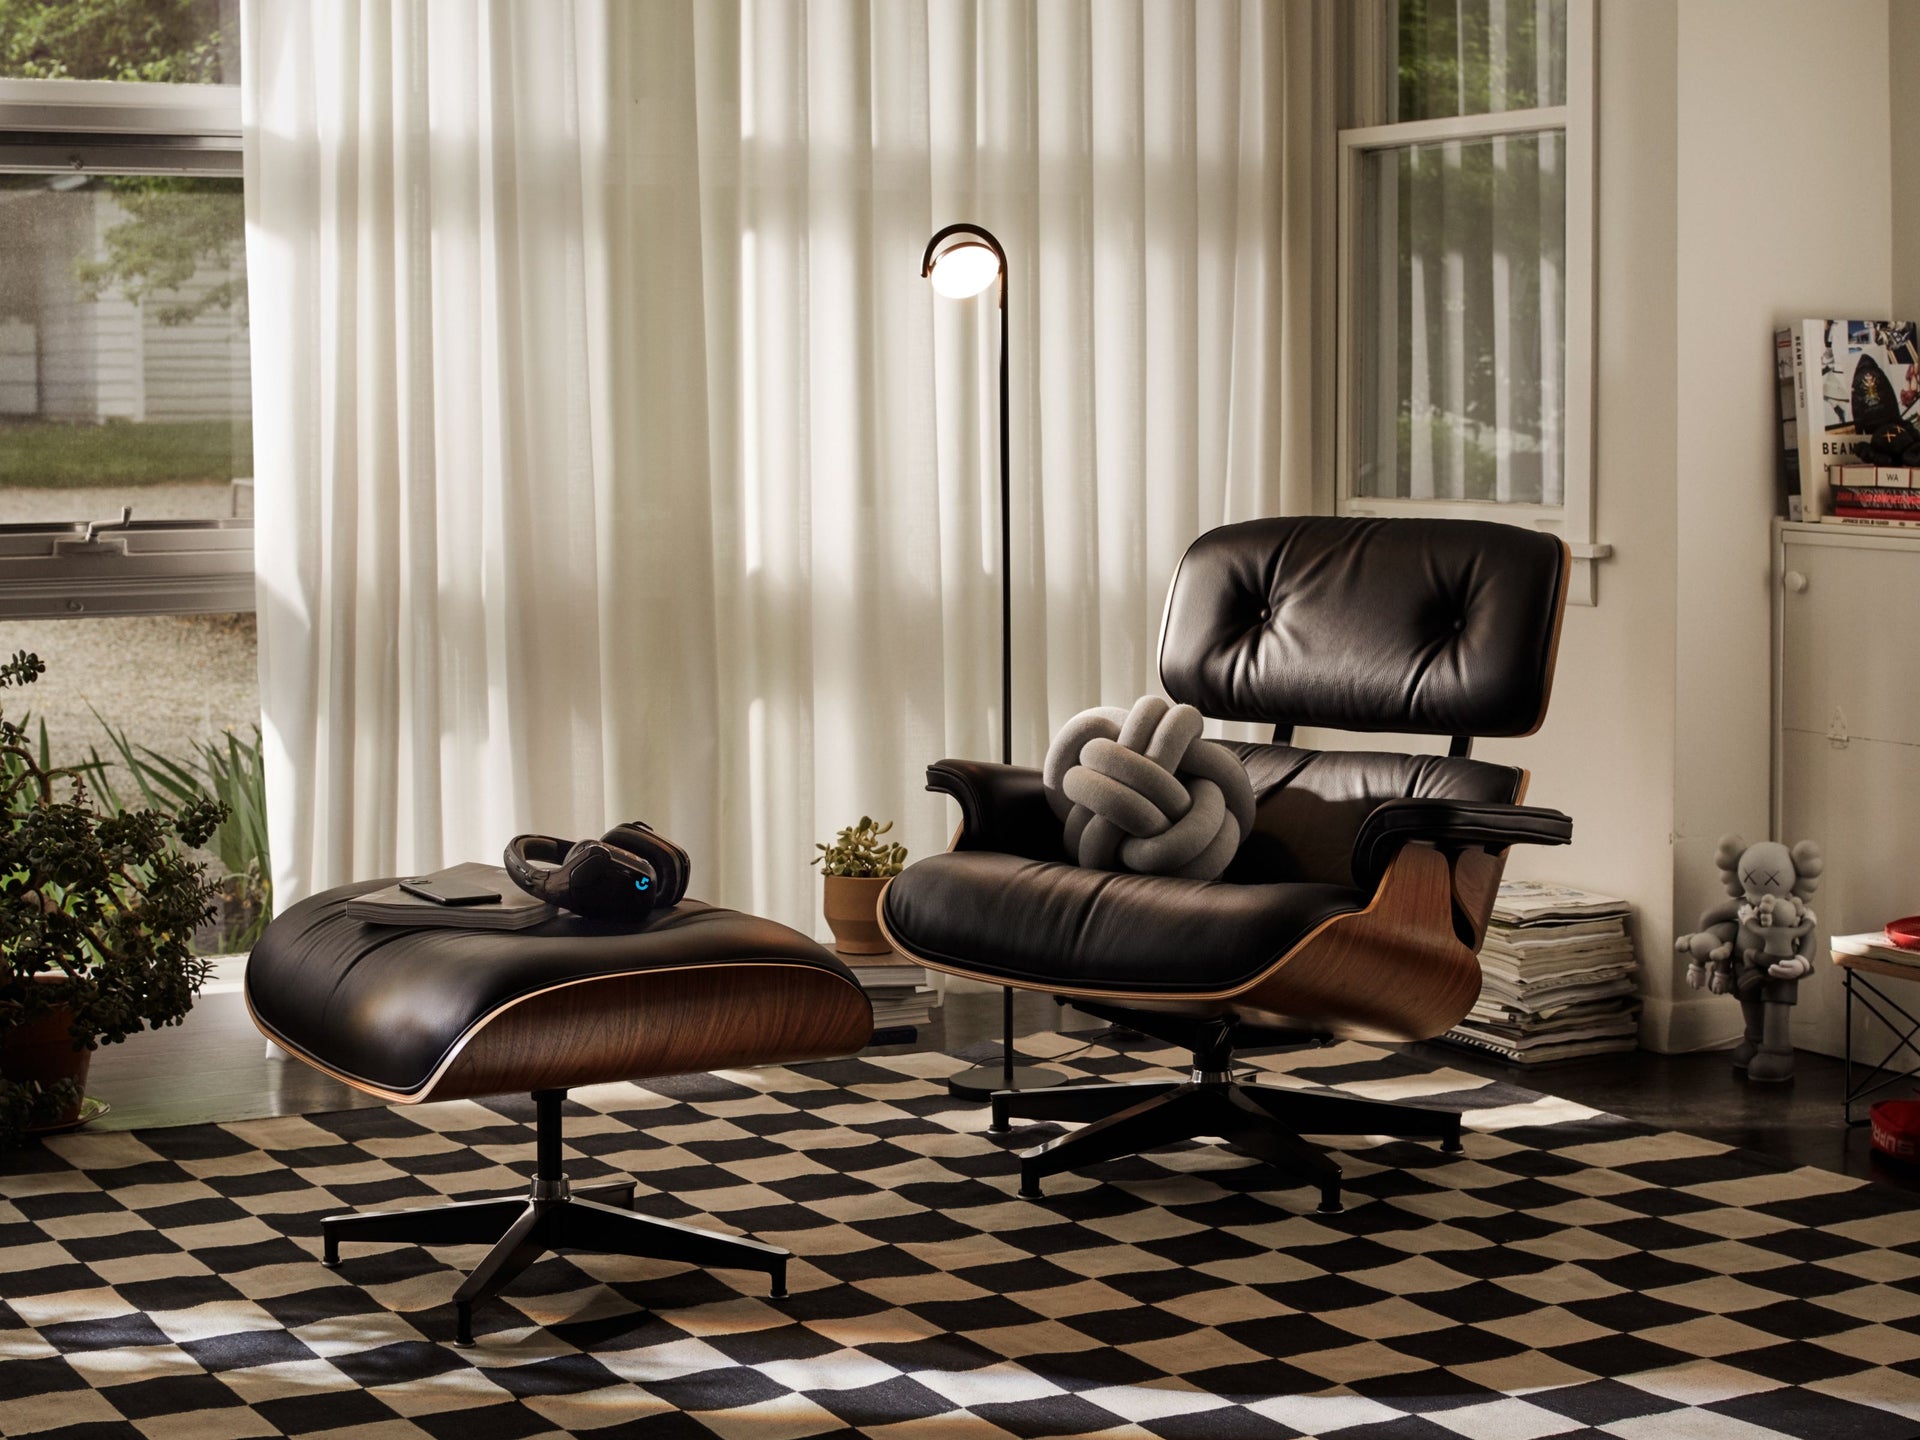 格子地毯上摆放着一张黑色皮革的Eames躺椅。